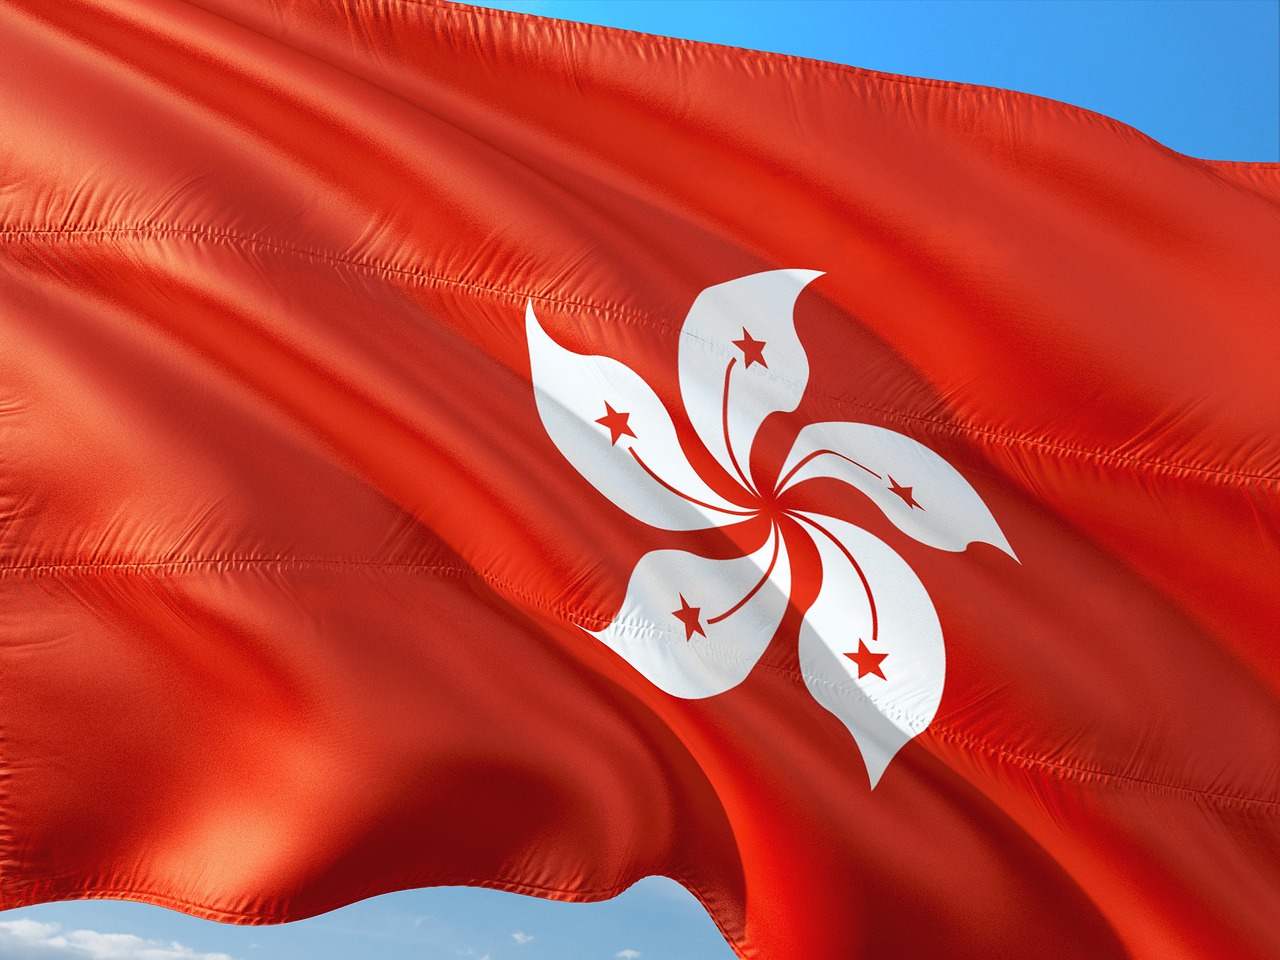 Flag of Hong Kong waving.